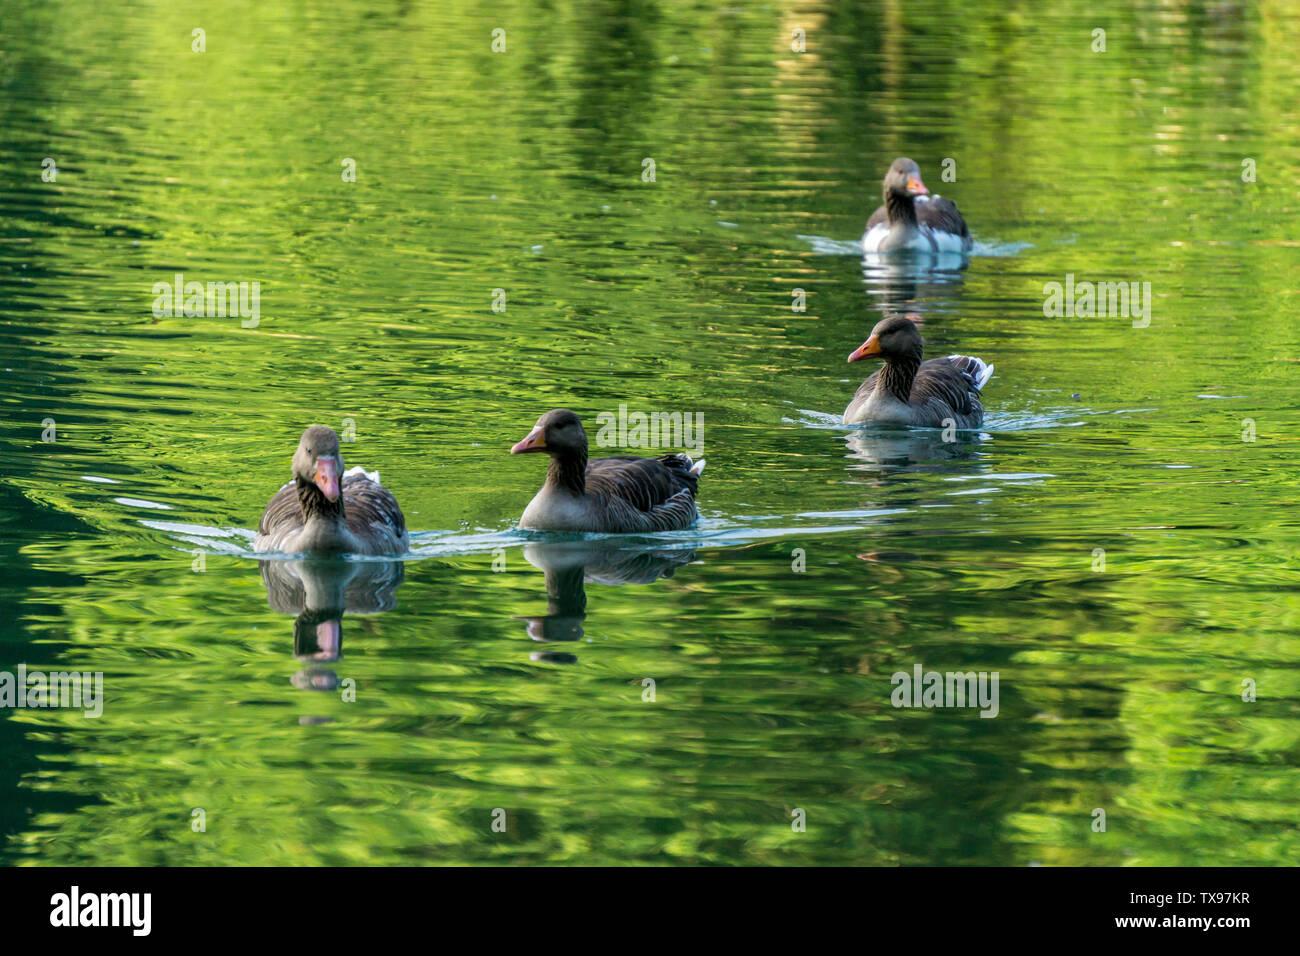 Image des femmes canards nageant dans un lac Banque D'Images